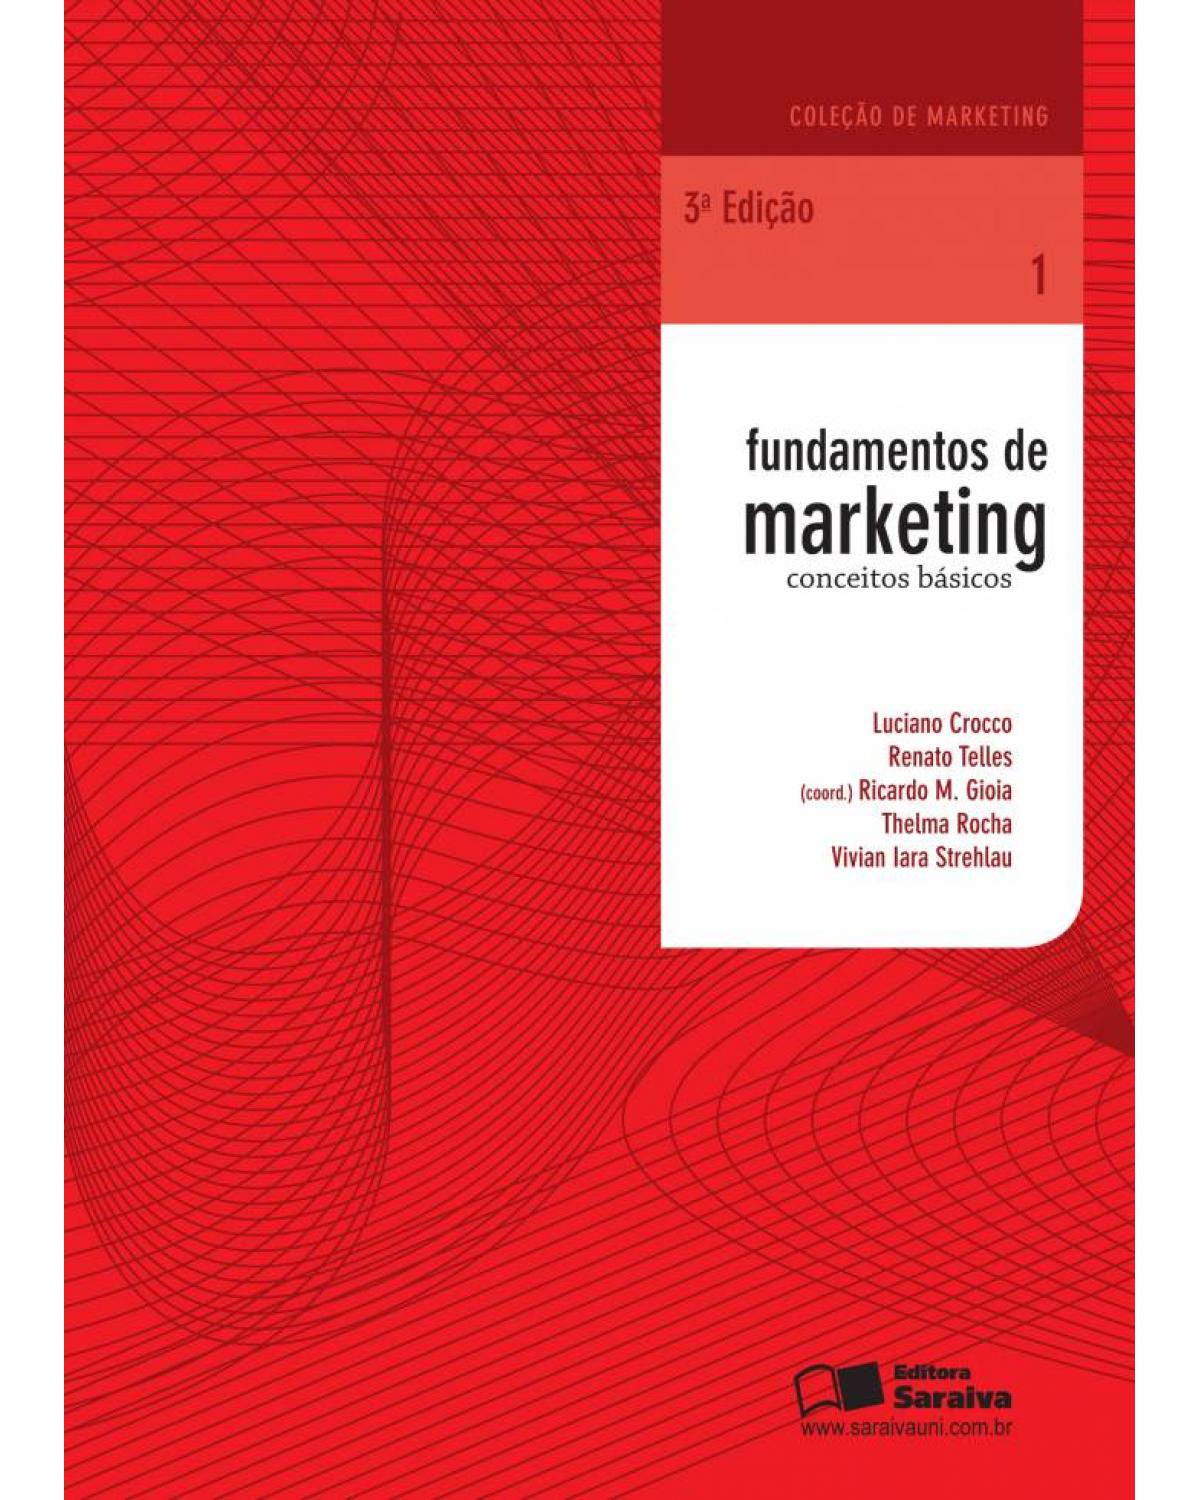 Fundamentos de marketing - conceitos básicos - 3ª Edição | 2013